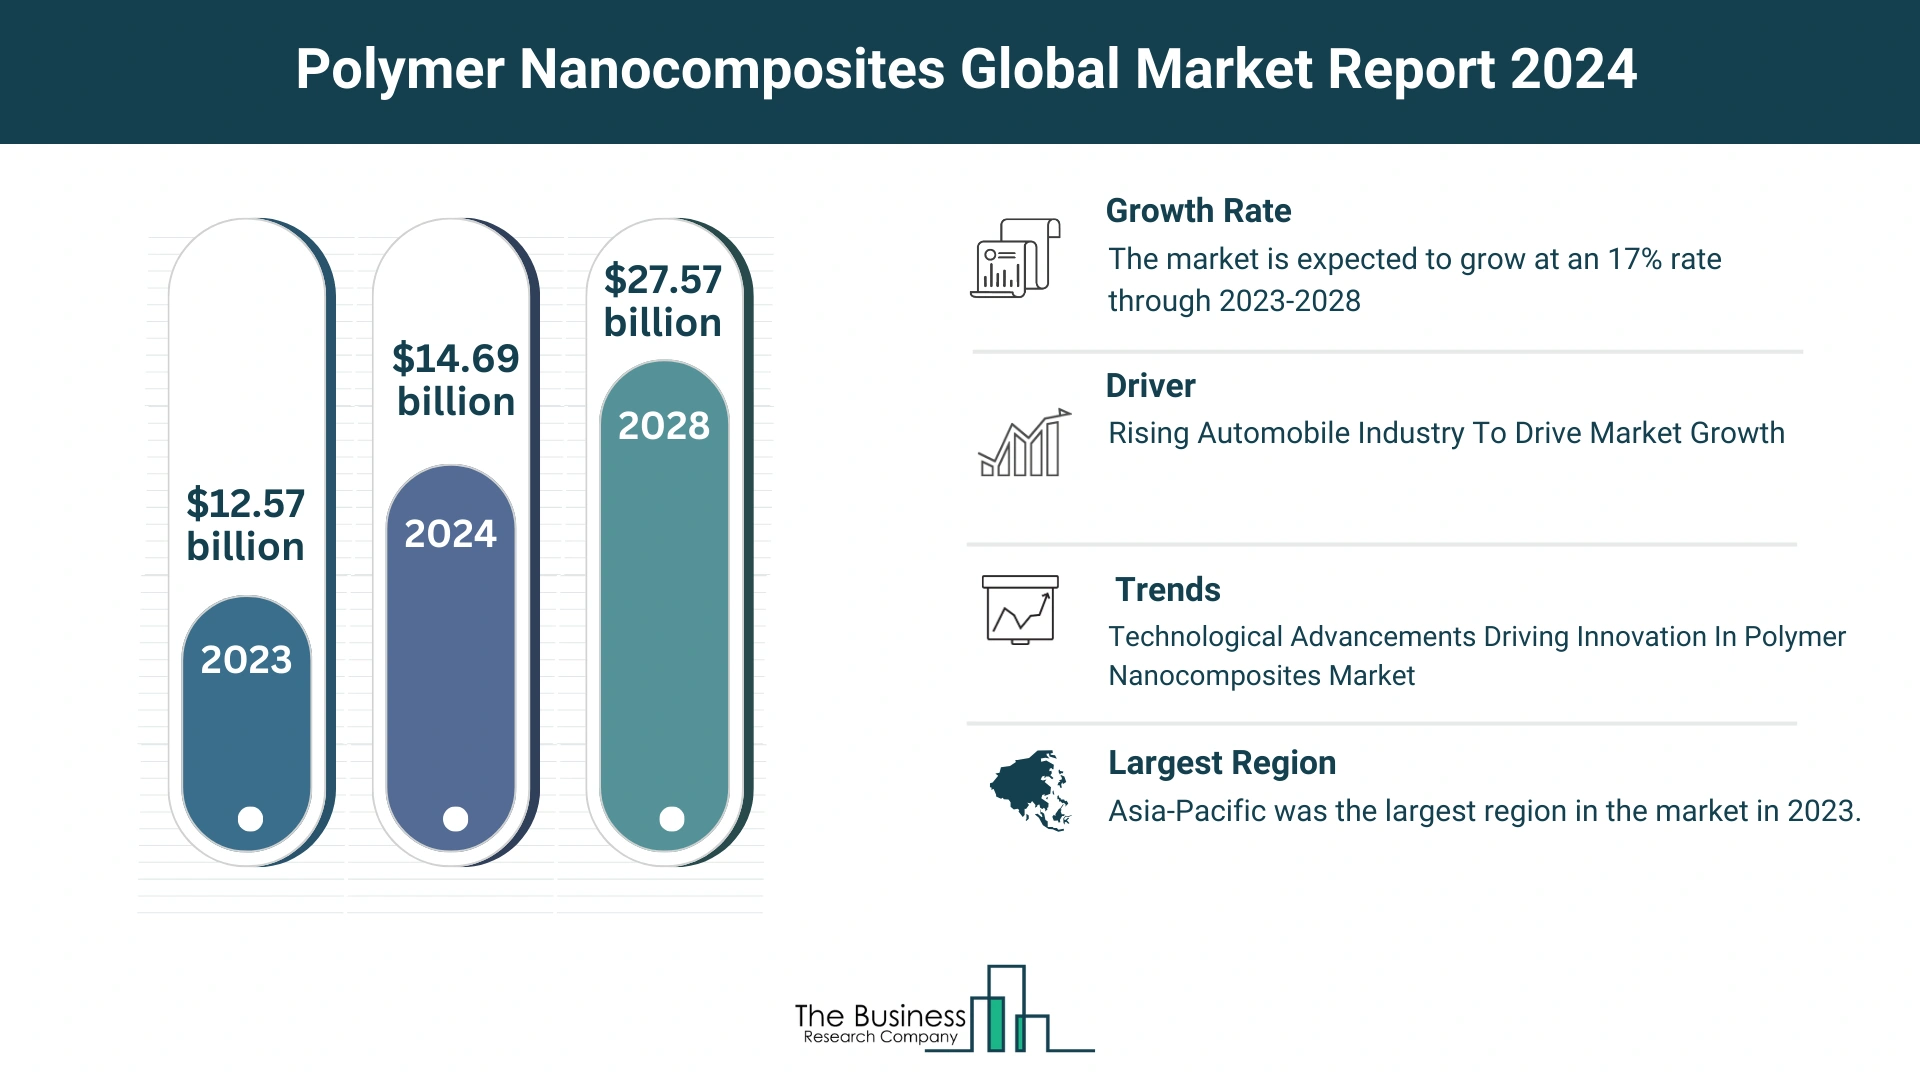 Global Polymer Nanocomposites Market